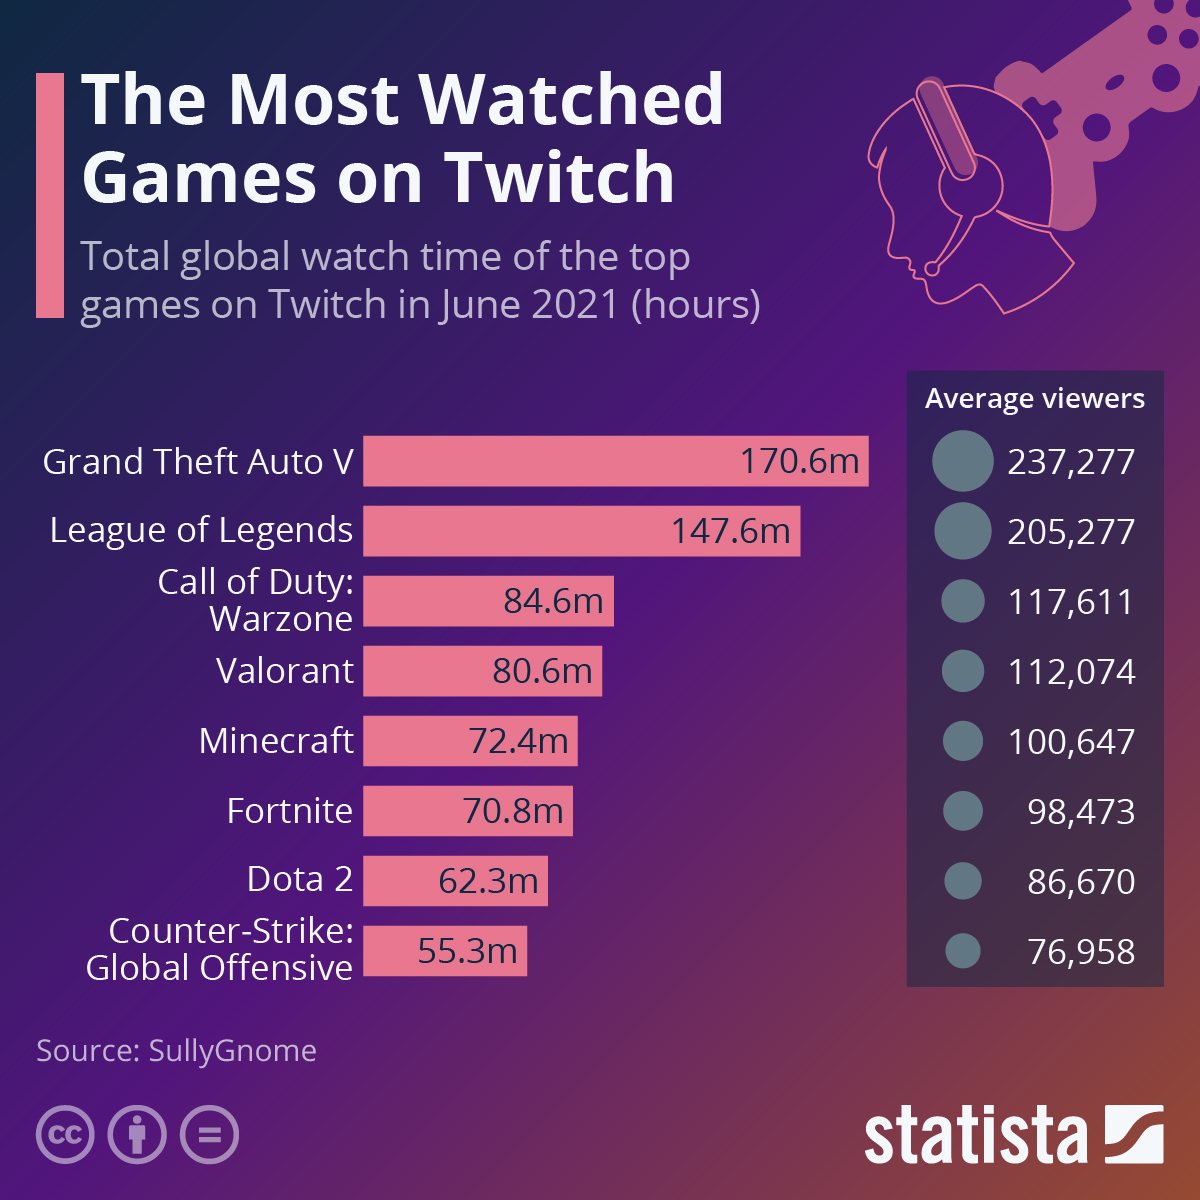  200m people watch gaming videos each day - Digital TV Europe